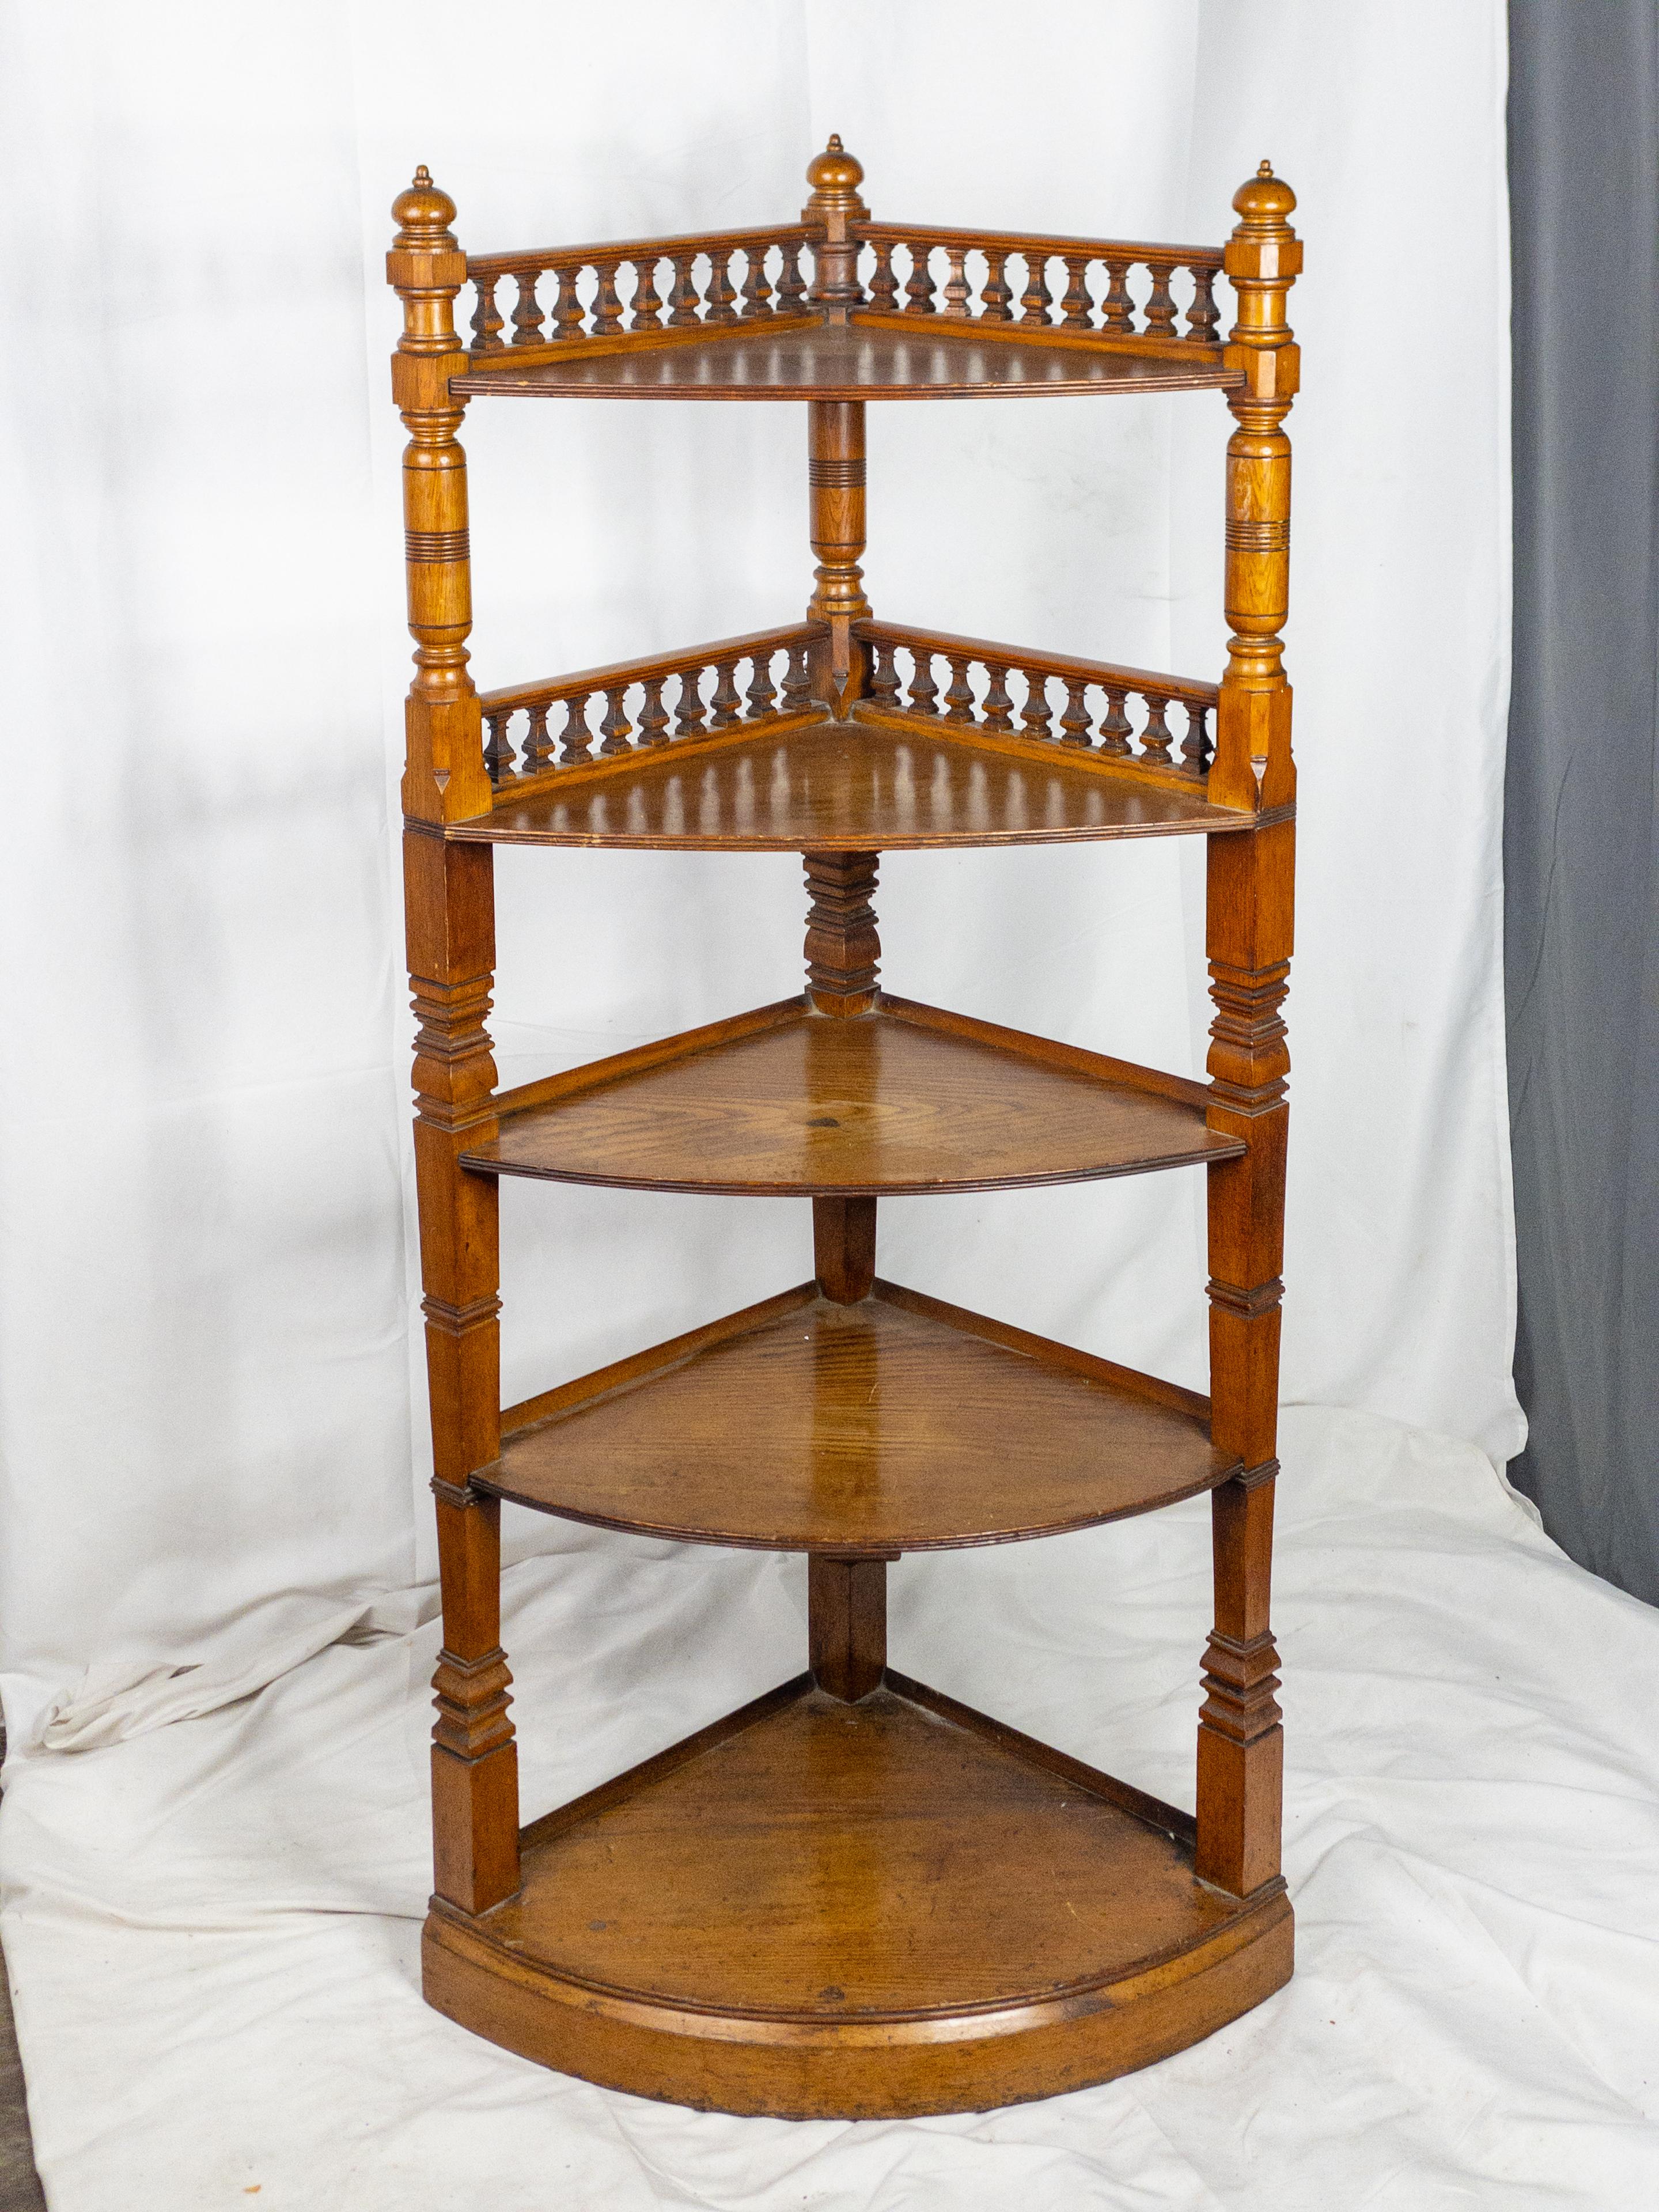 Ein Eckregal aus edwardianischer Eiche aus den 1920er Jahren ist ein unverwechselbares Möbelstück, das die Eleganz und Handwerkskunst der edwardianischen Ära verkörpert. Dieses Regal ist aus Eiche gefertigt, einem in dieser Zeit sehr beliebten Holz,